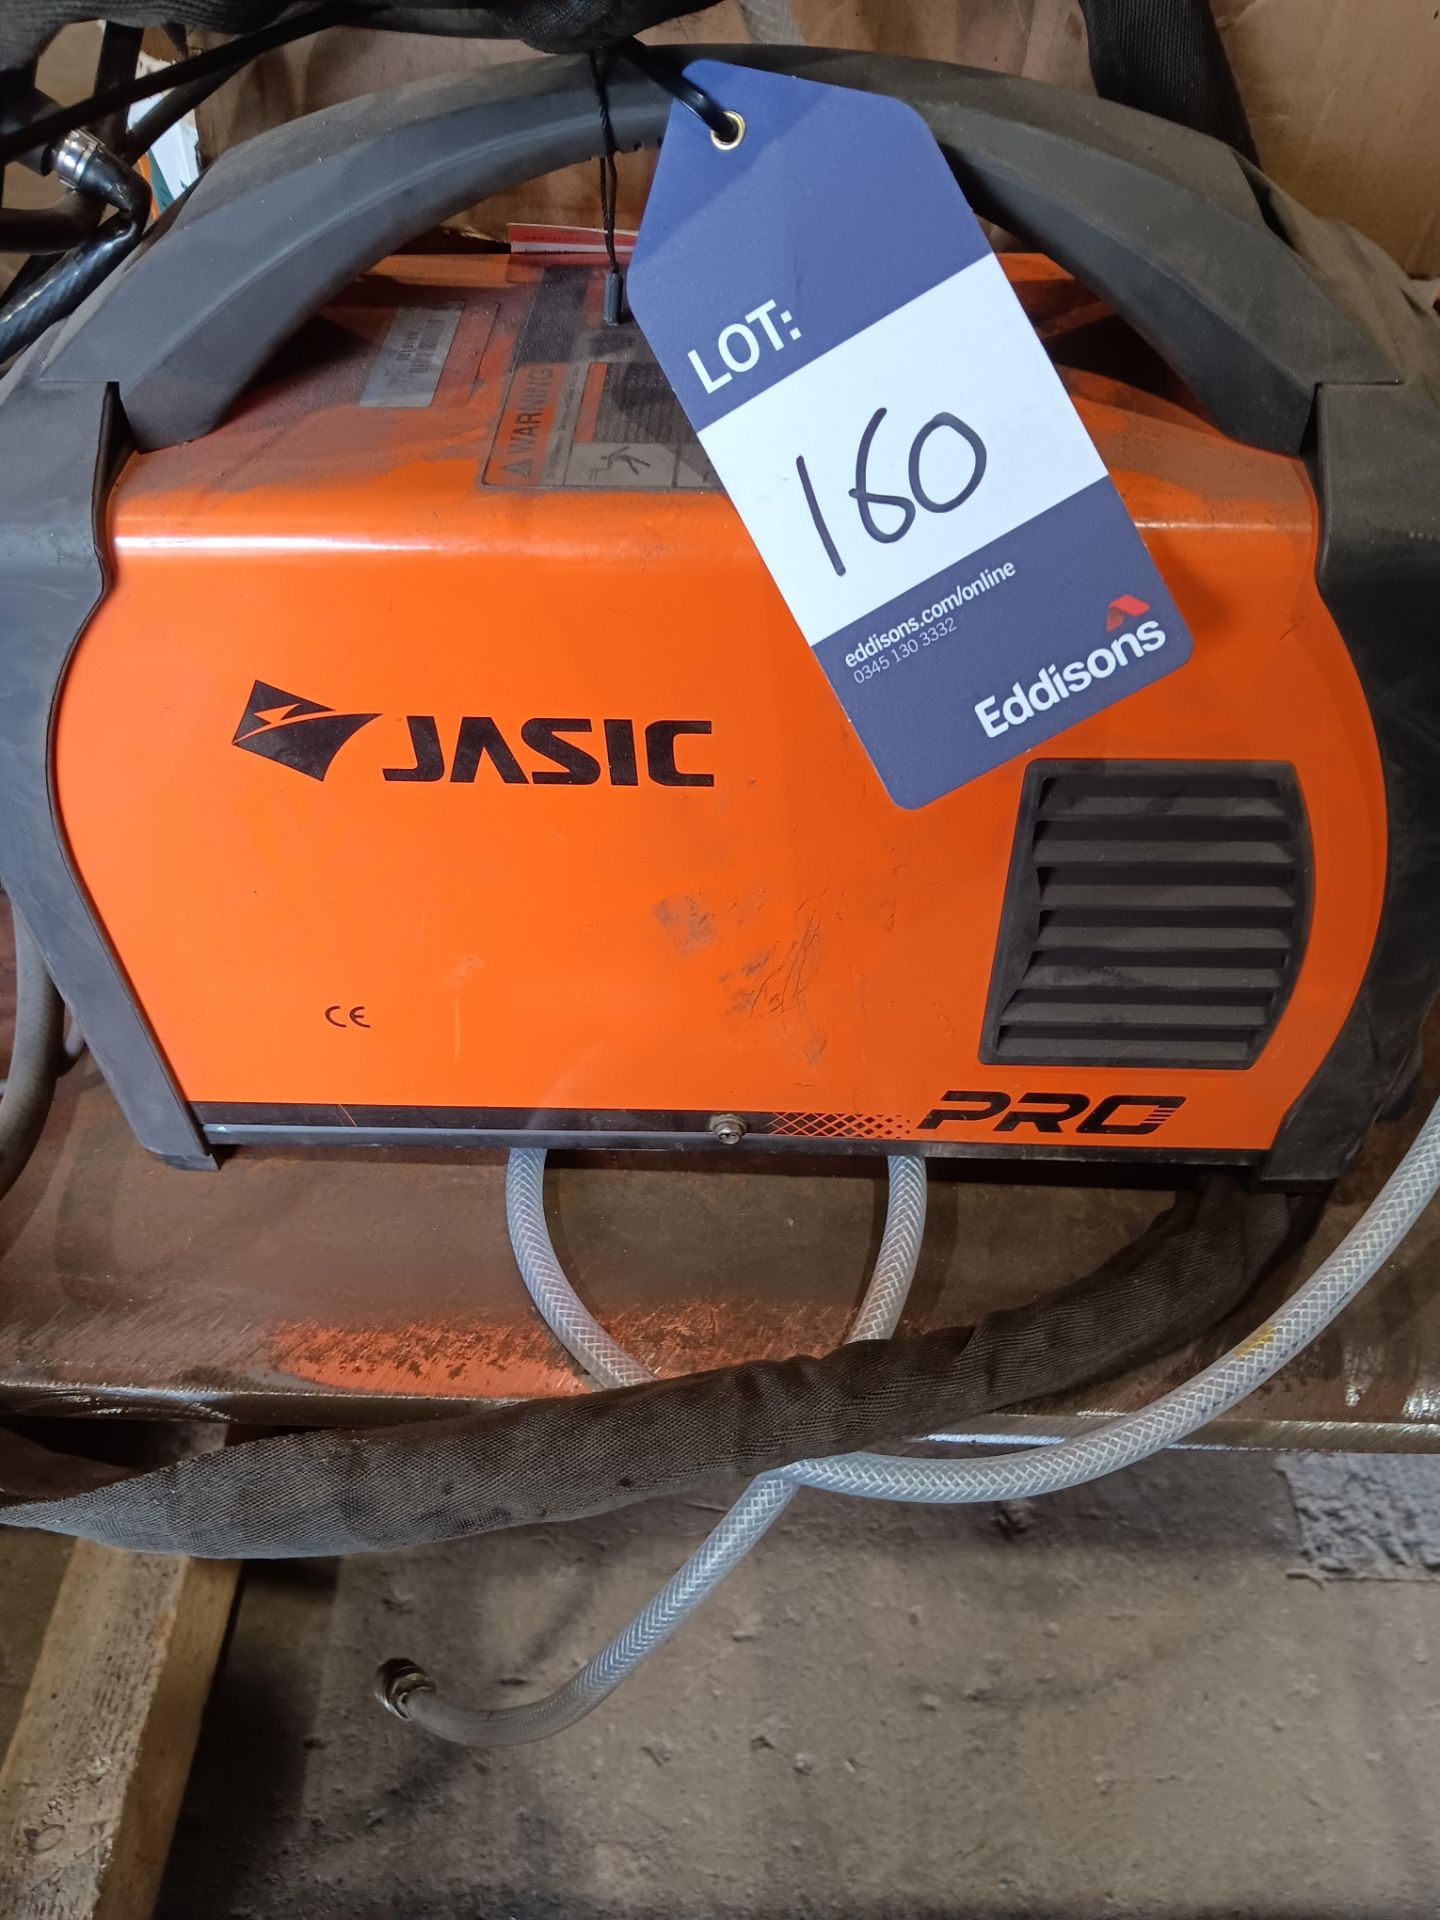 Jasic Pro Tig180 tig welder - Image 2 of 4